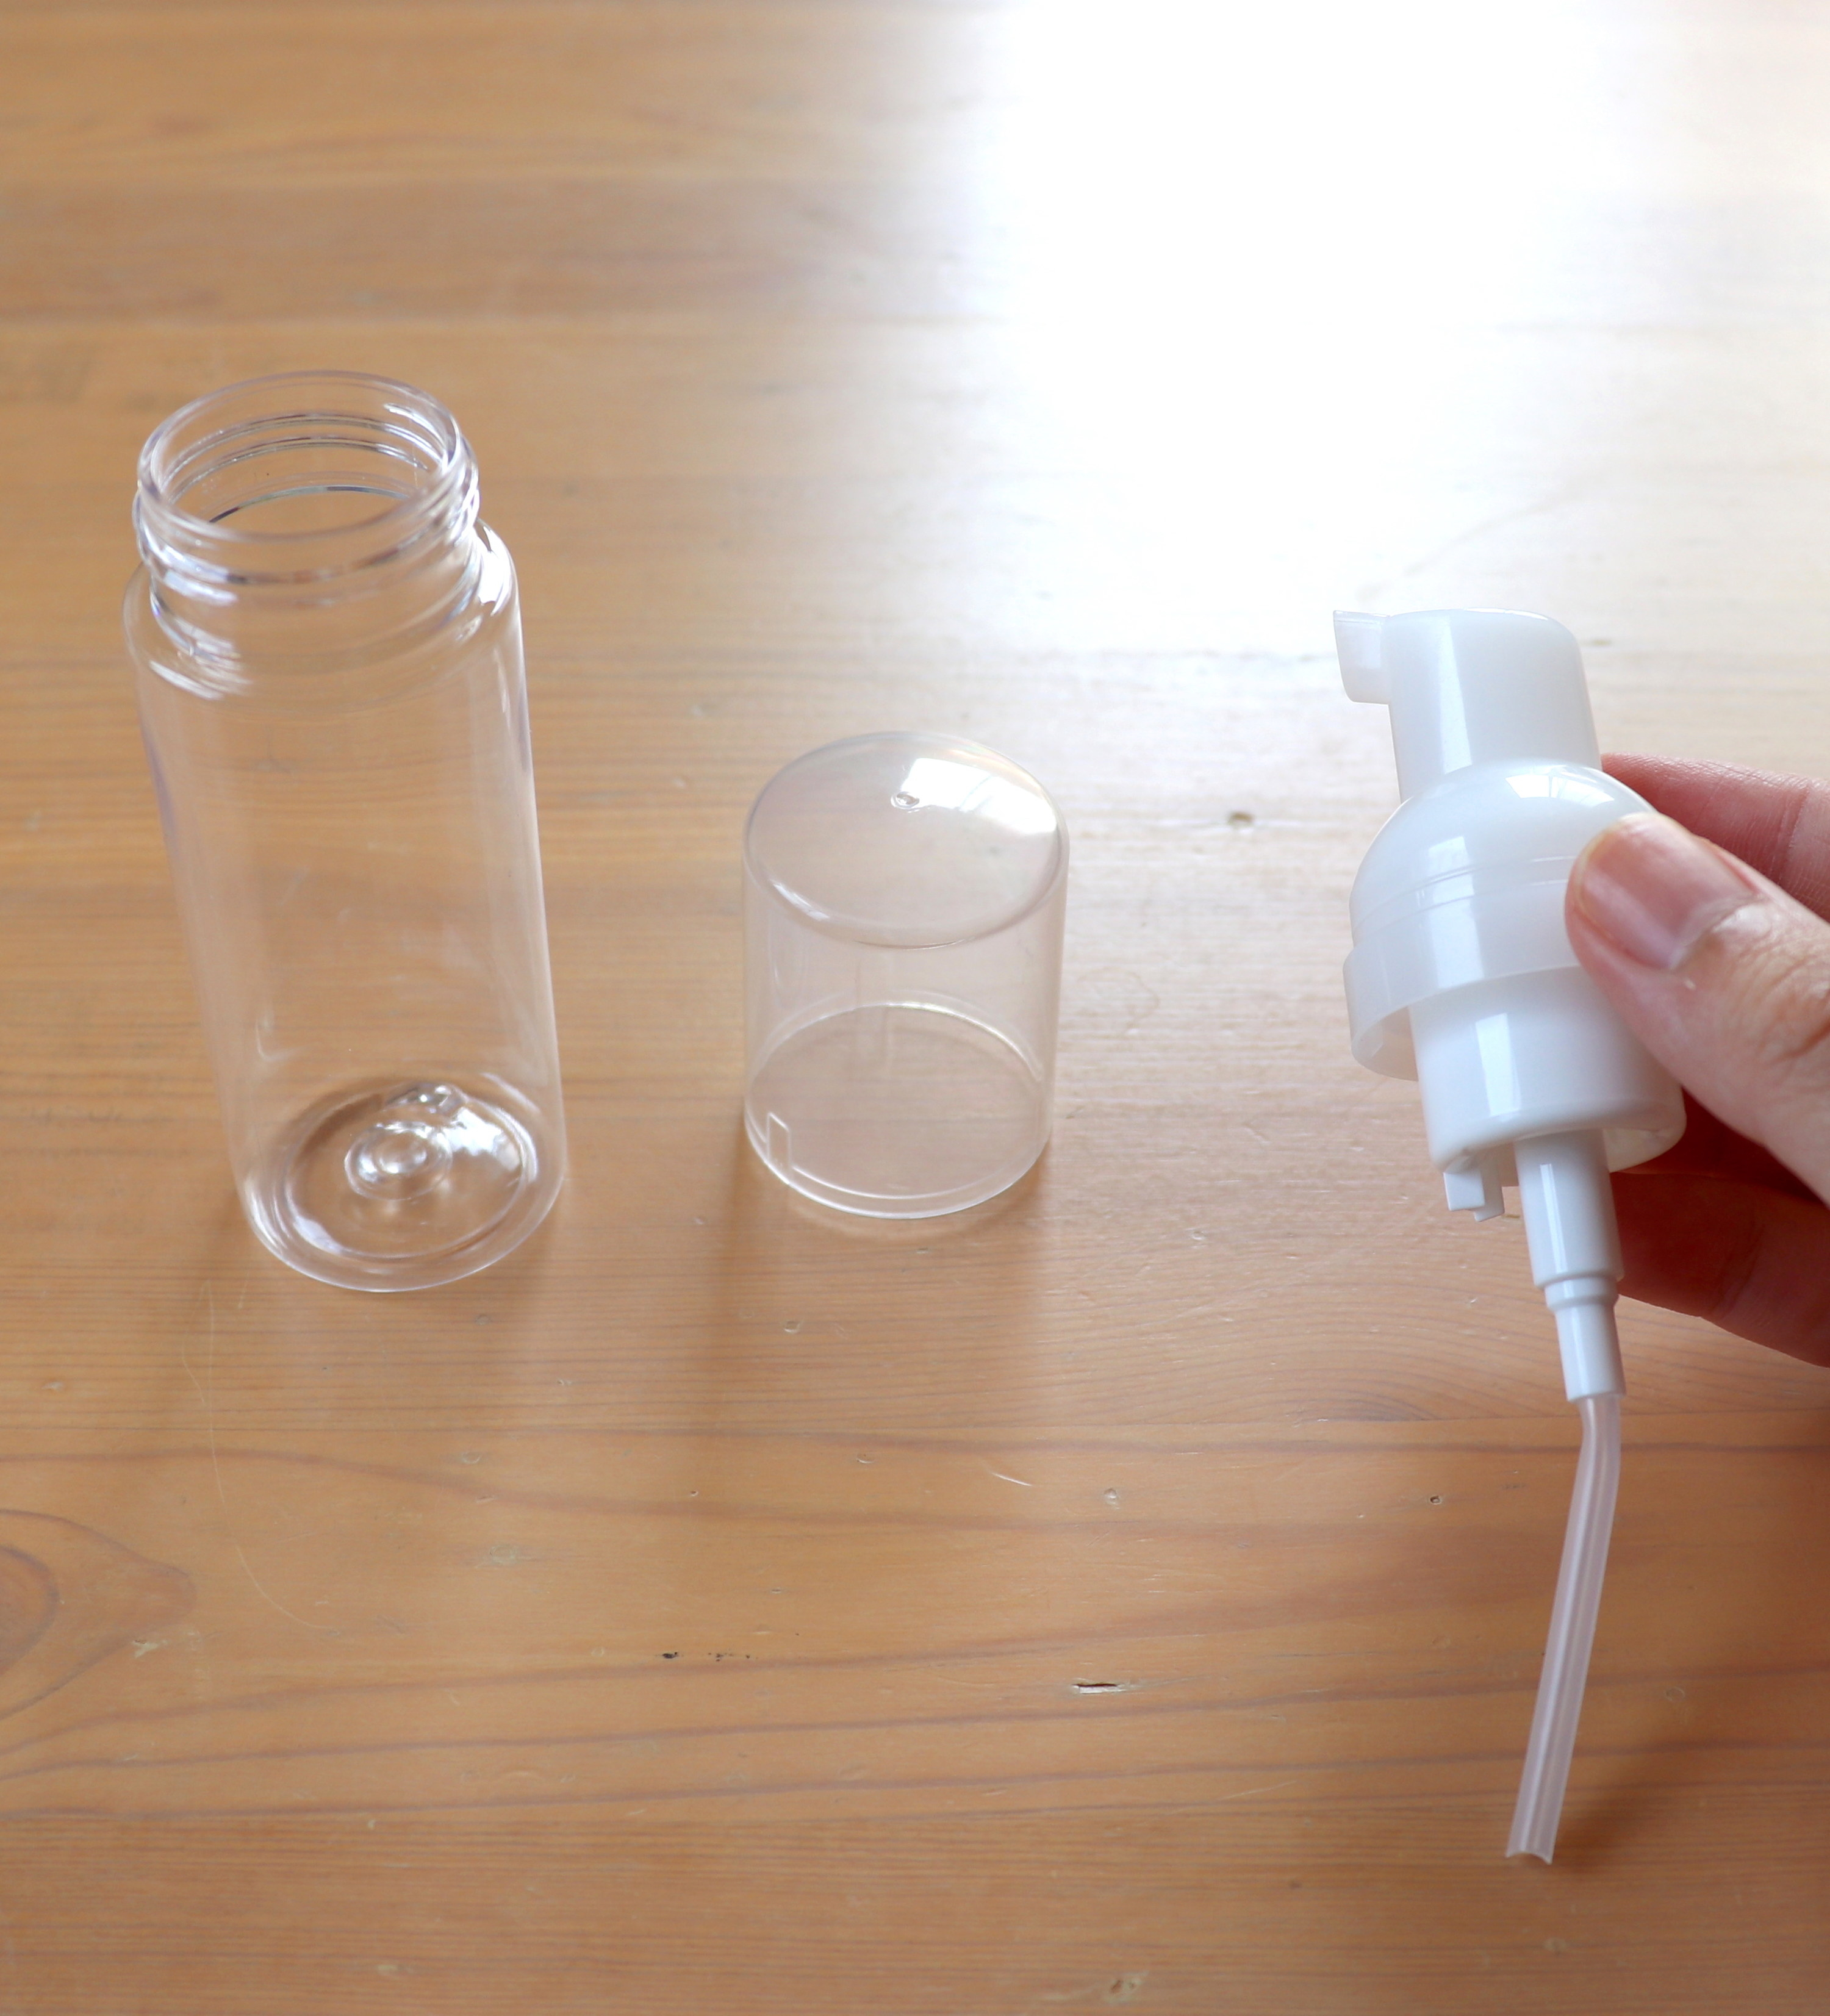 無印良品のおすすめ便利アイテム「PET小分けボトル泡タイプ」